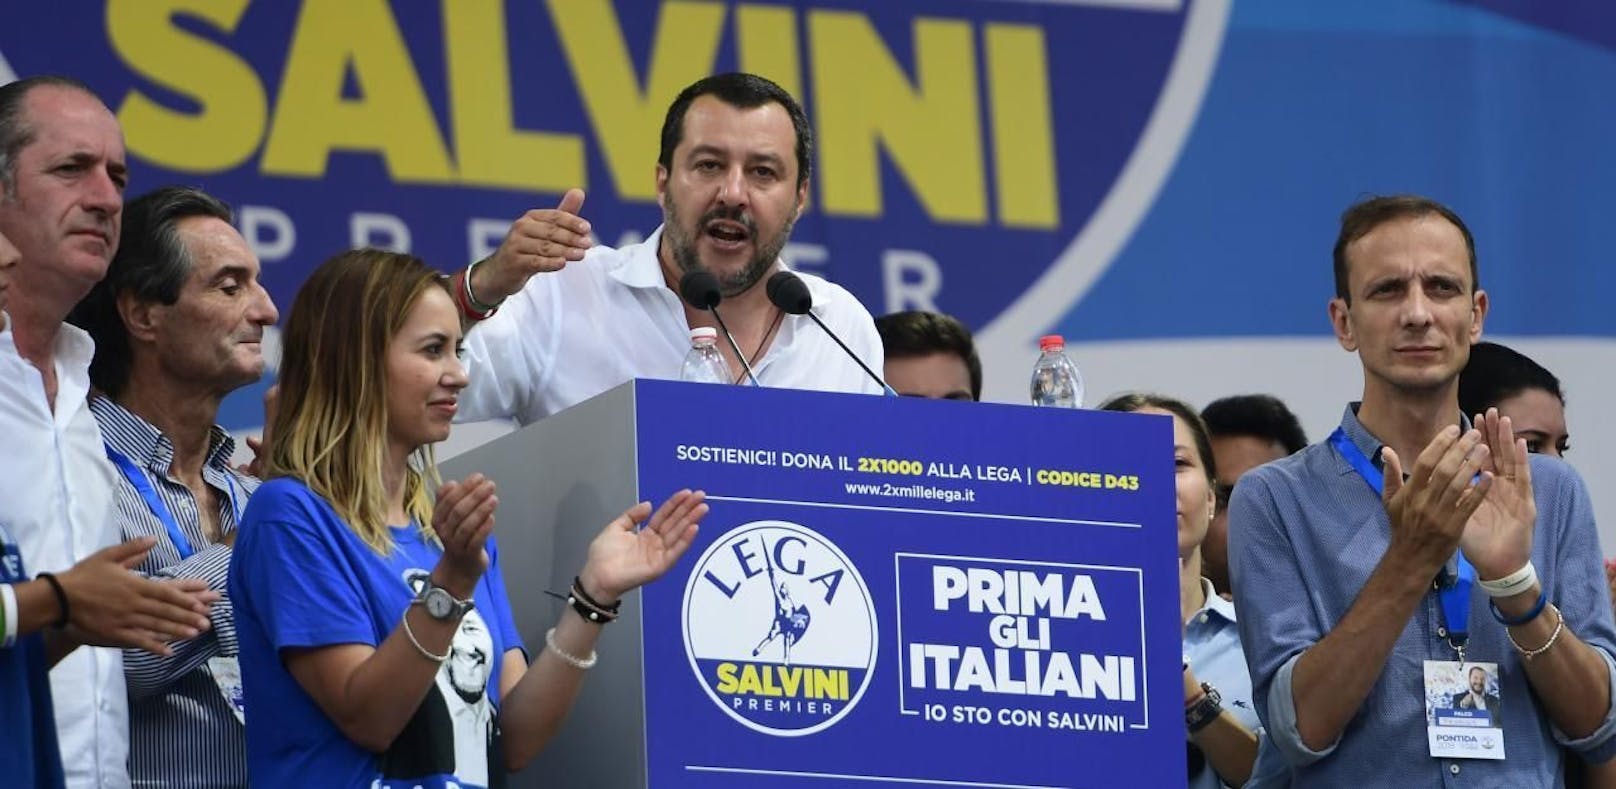 Briefbombe explodiert vor Salvini-Besuch im Trentino